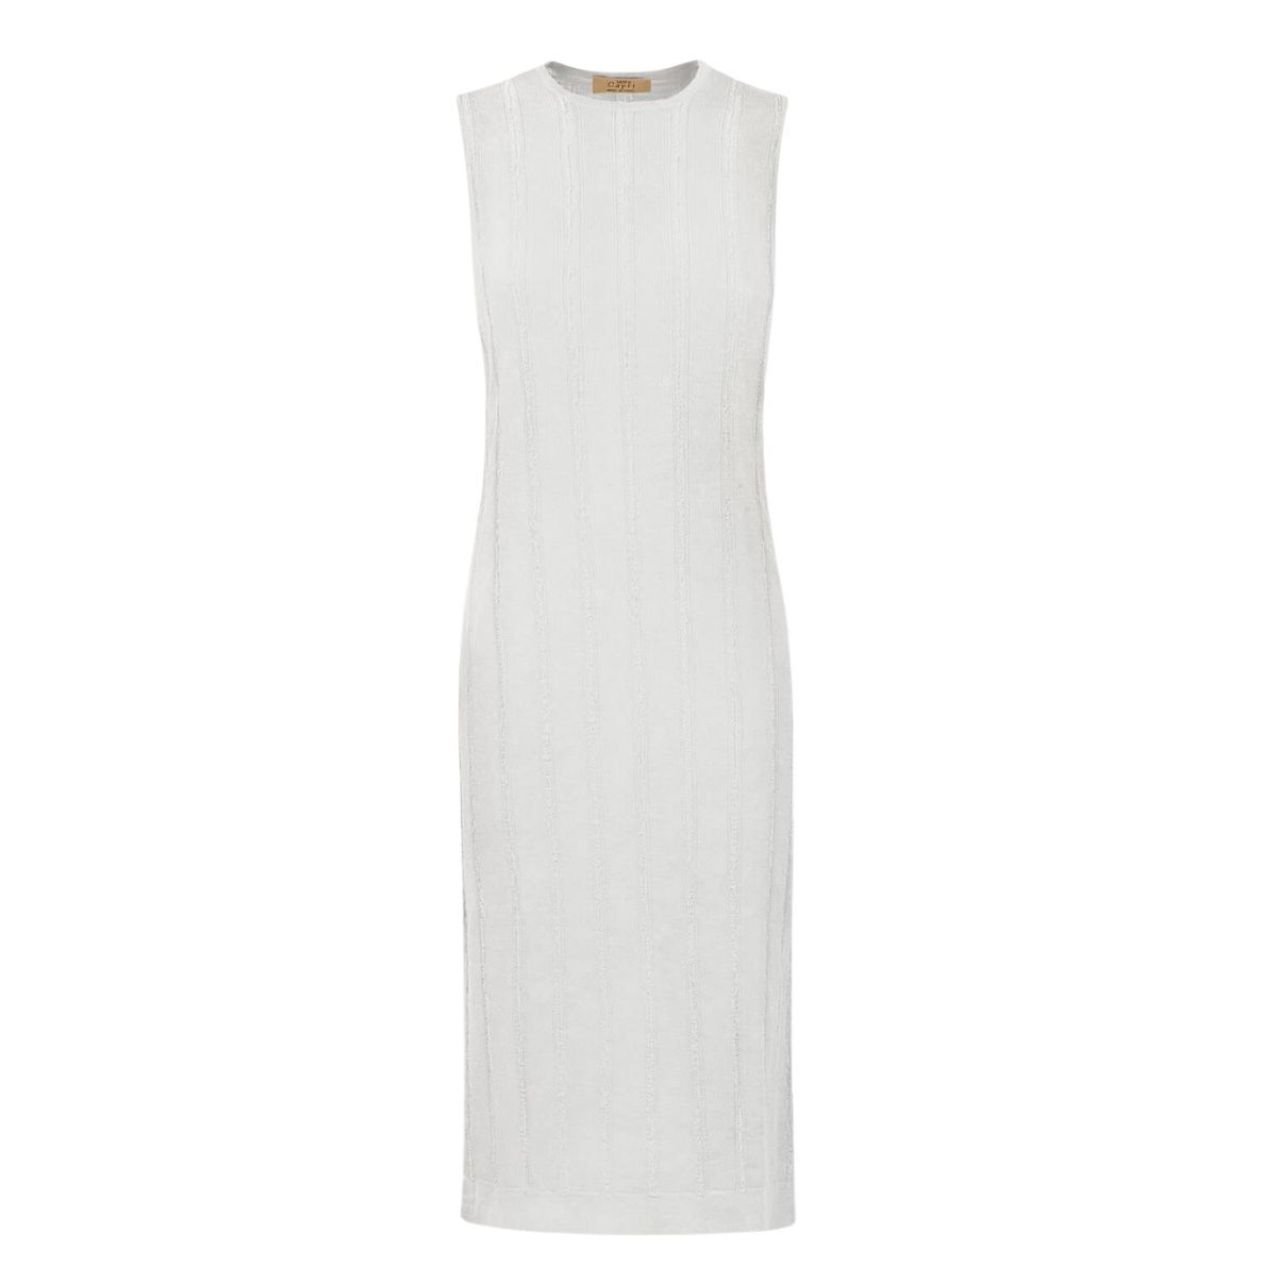 100% Capri white linen dress